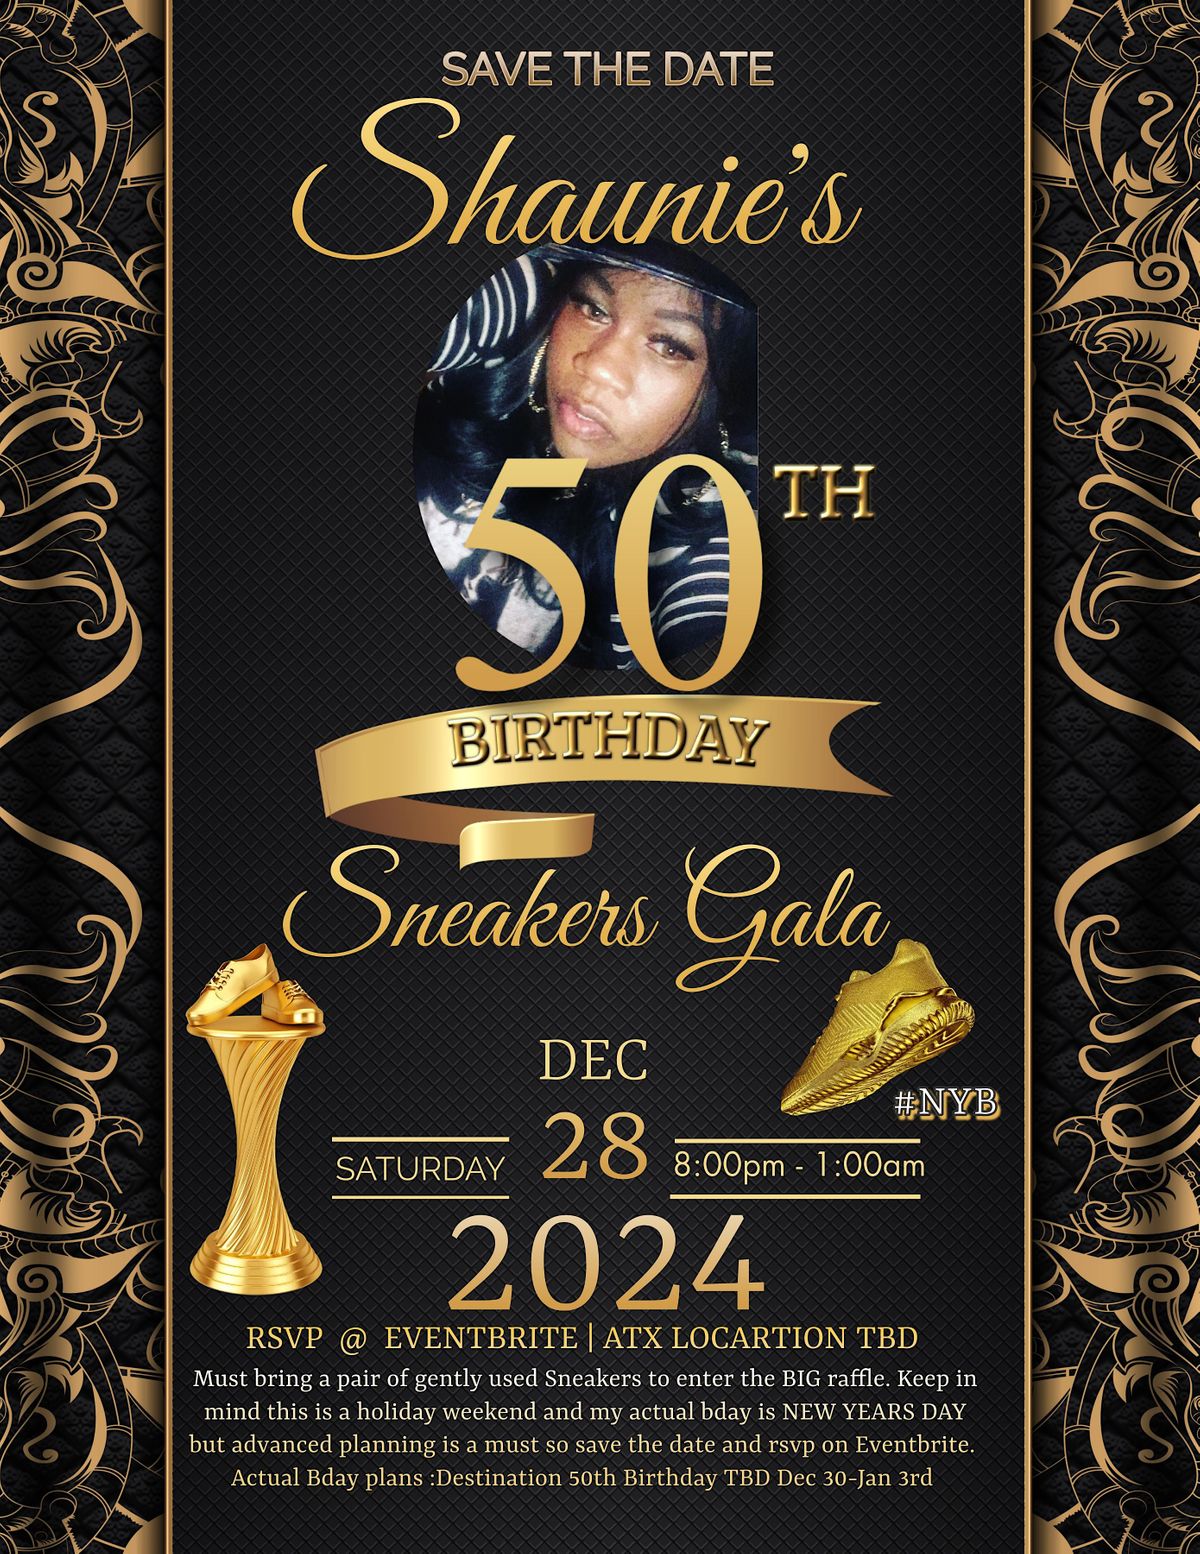 50 Years of Shaunie